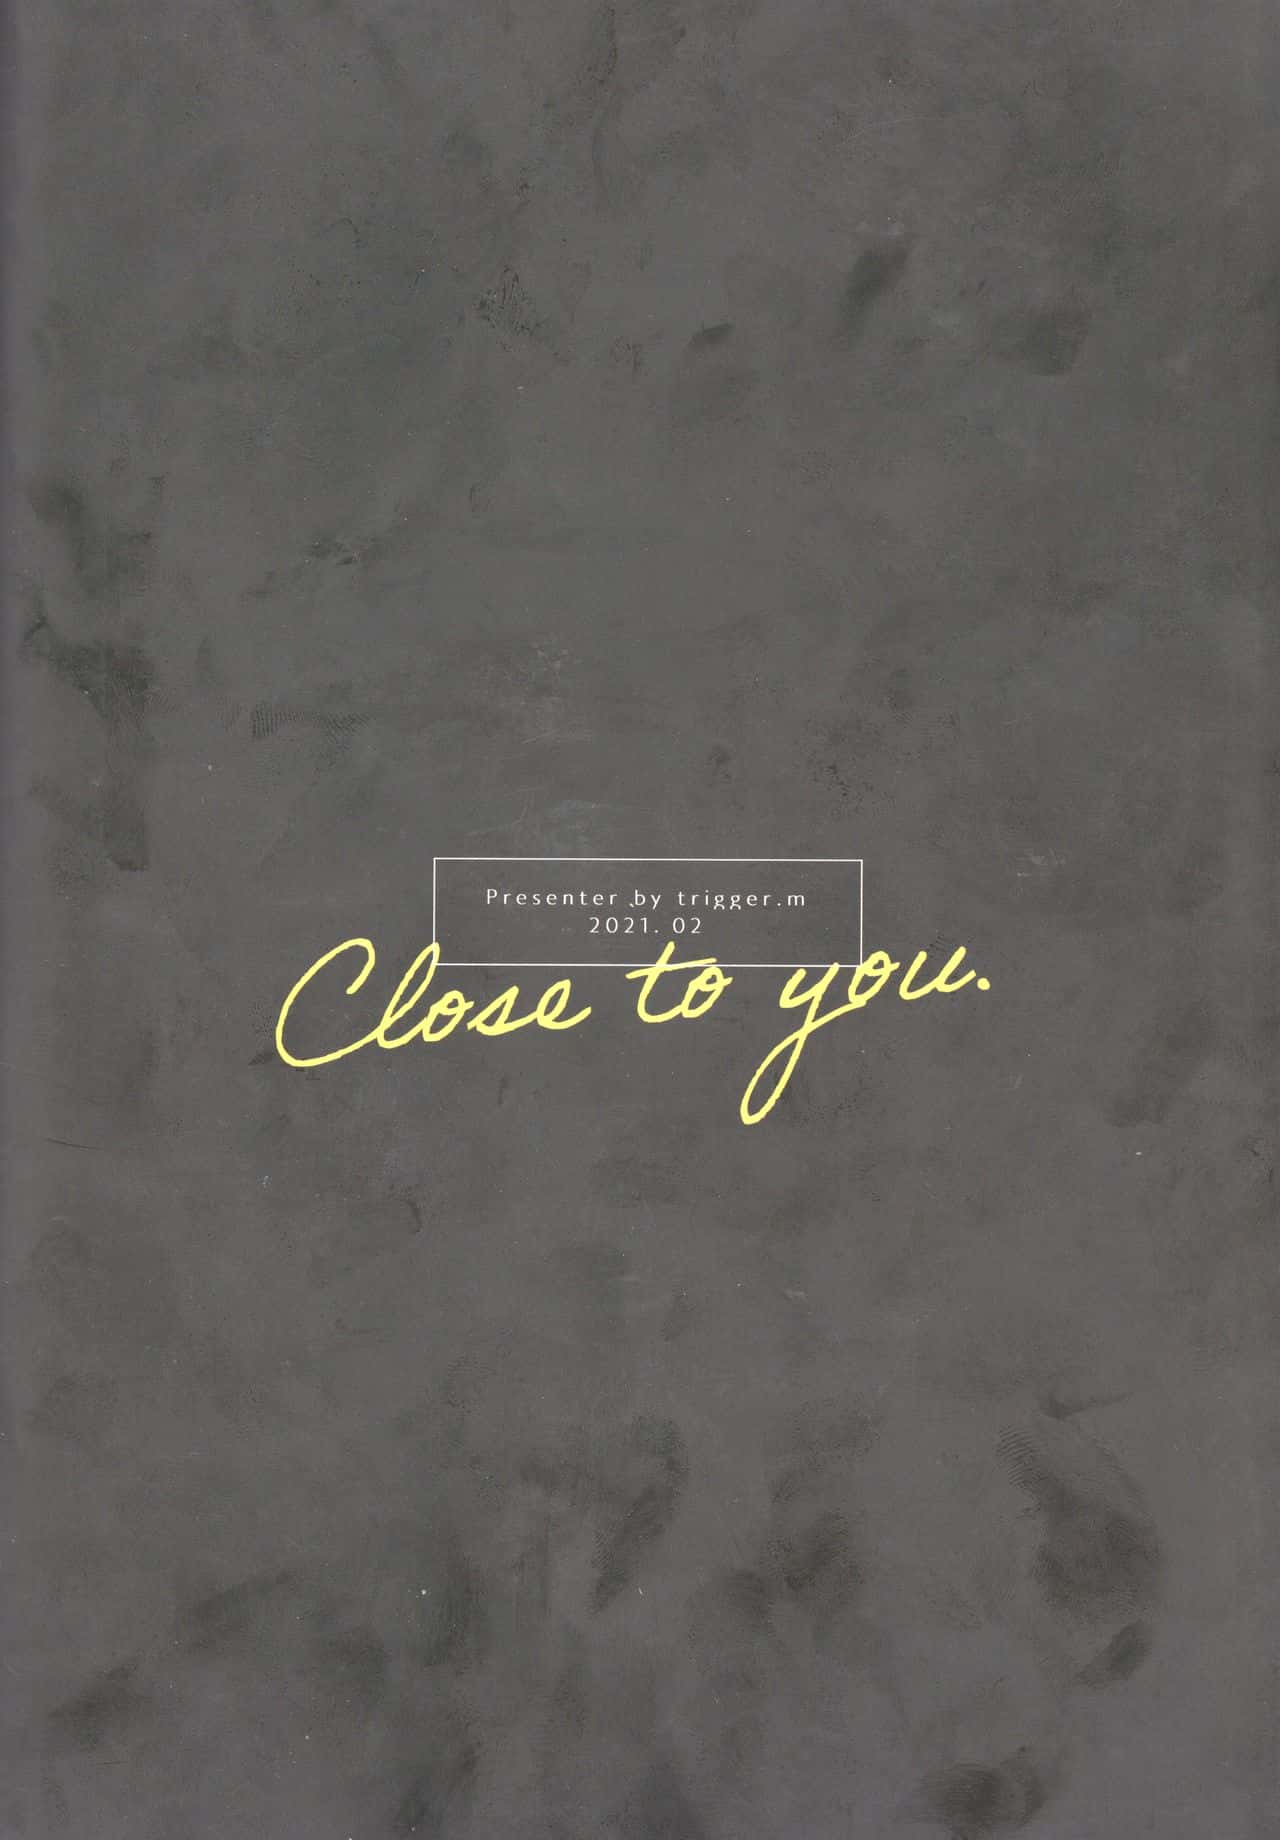 Close to you.